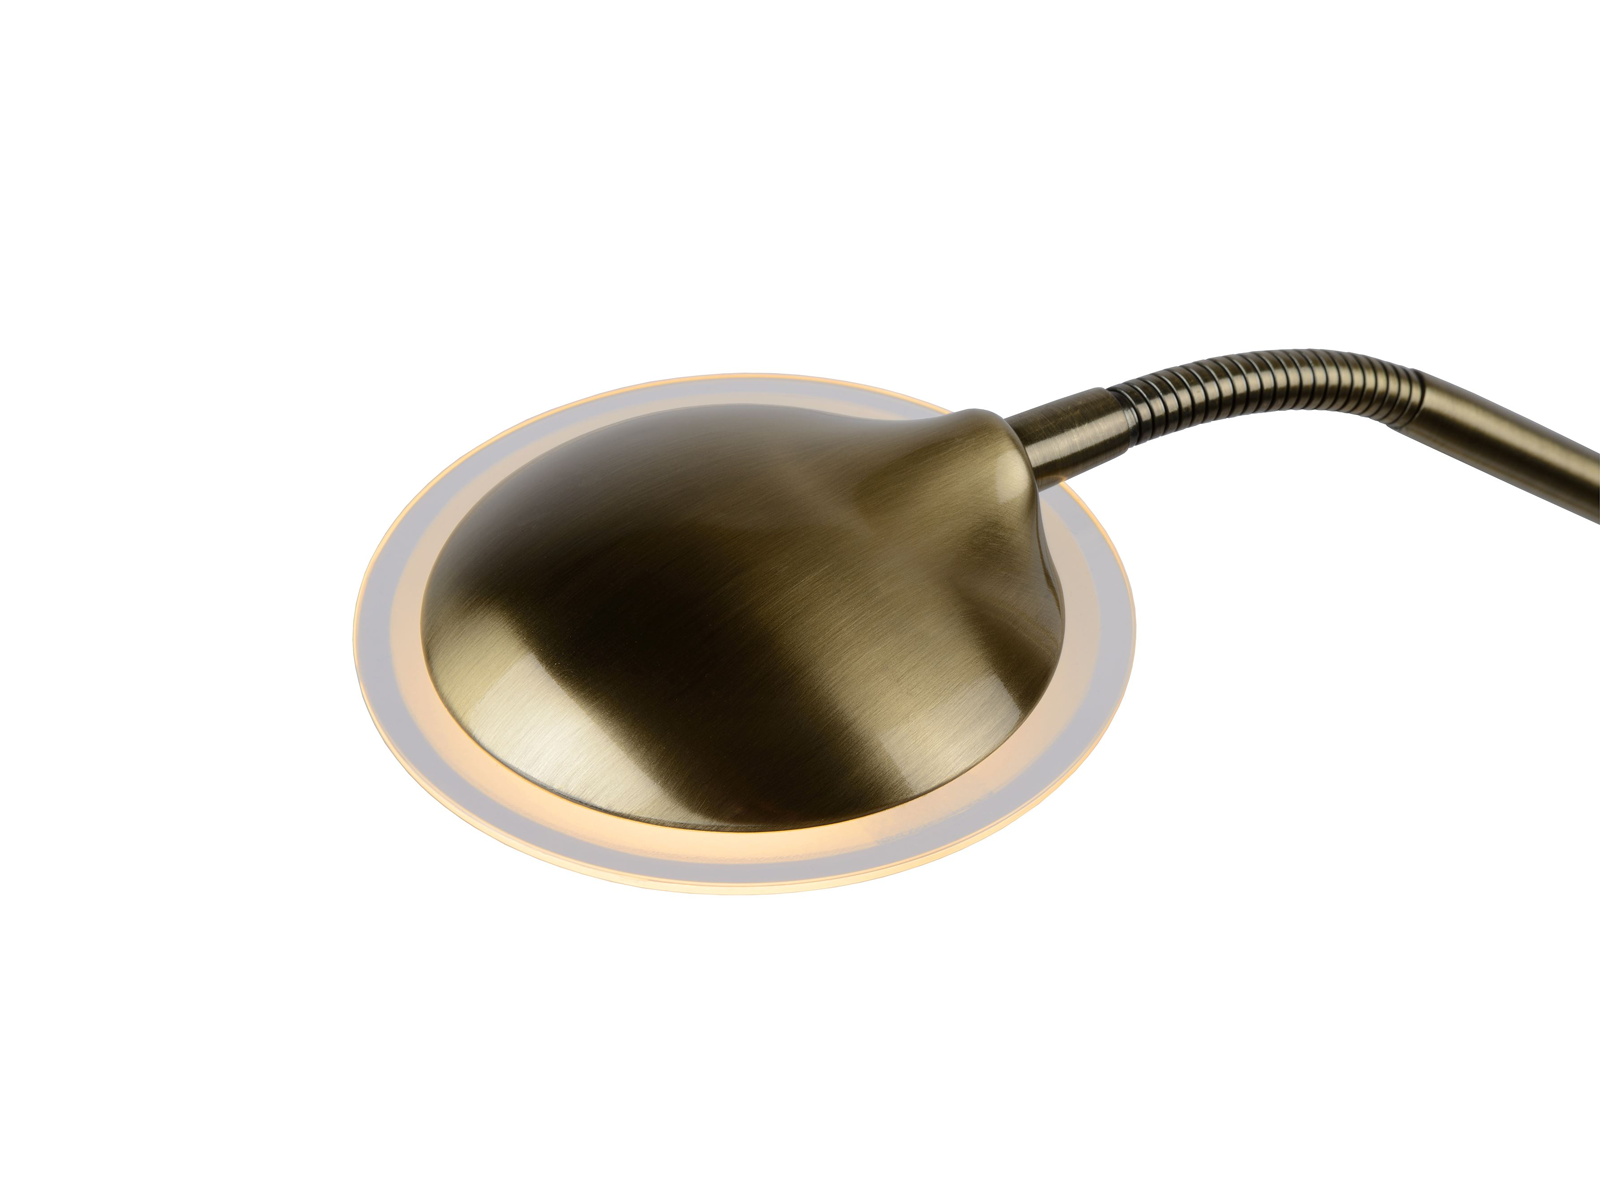 Stojací lampa Champion-LED bronz, 20W, 4W, 3000K, 180cm